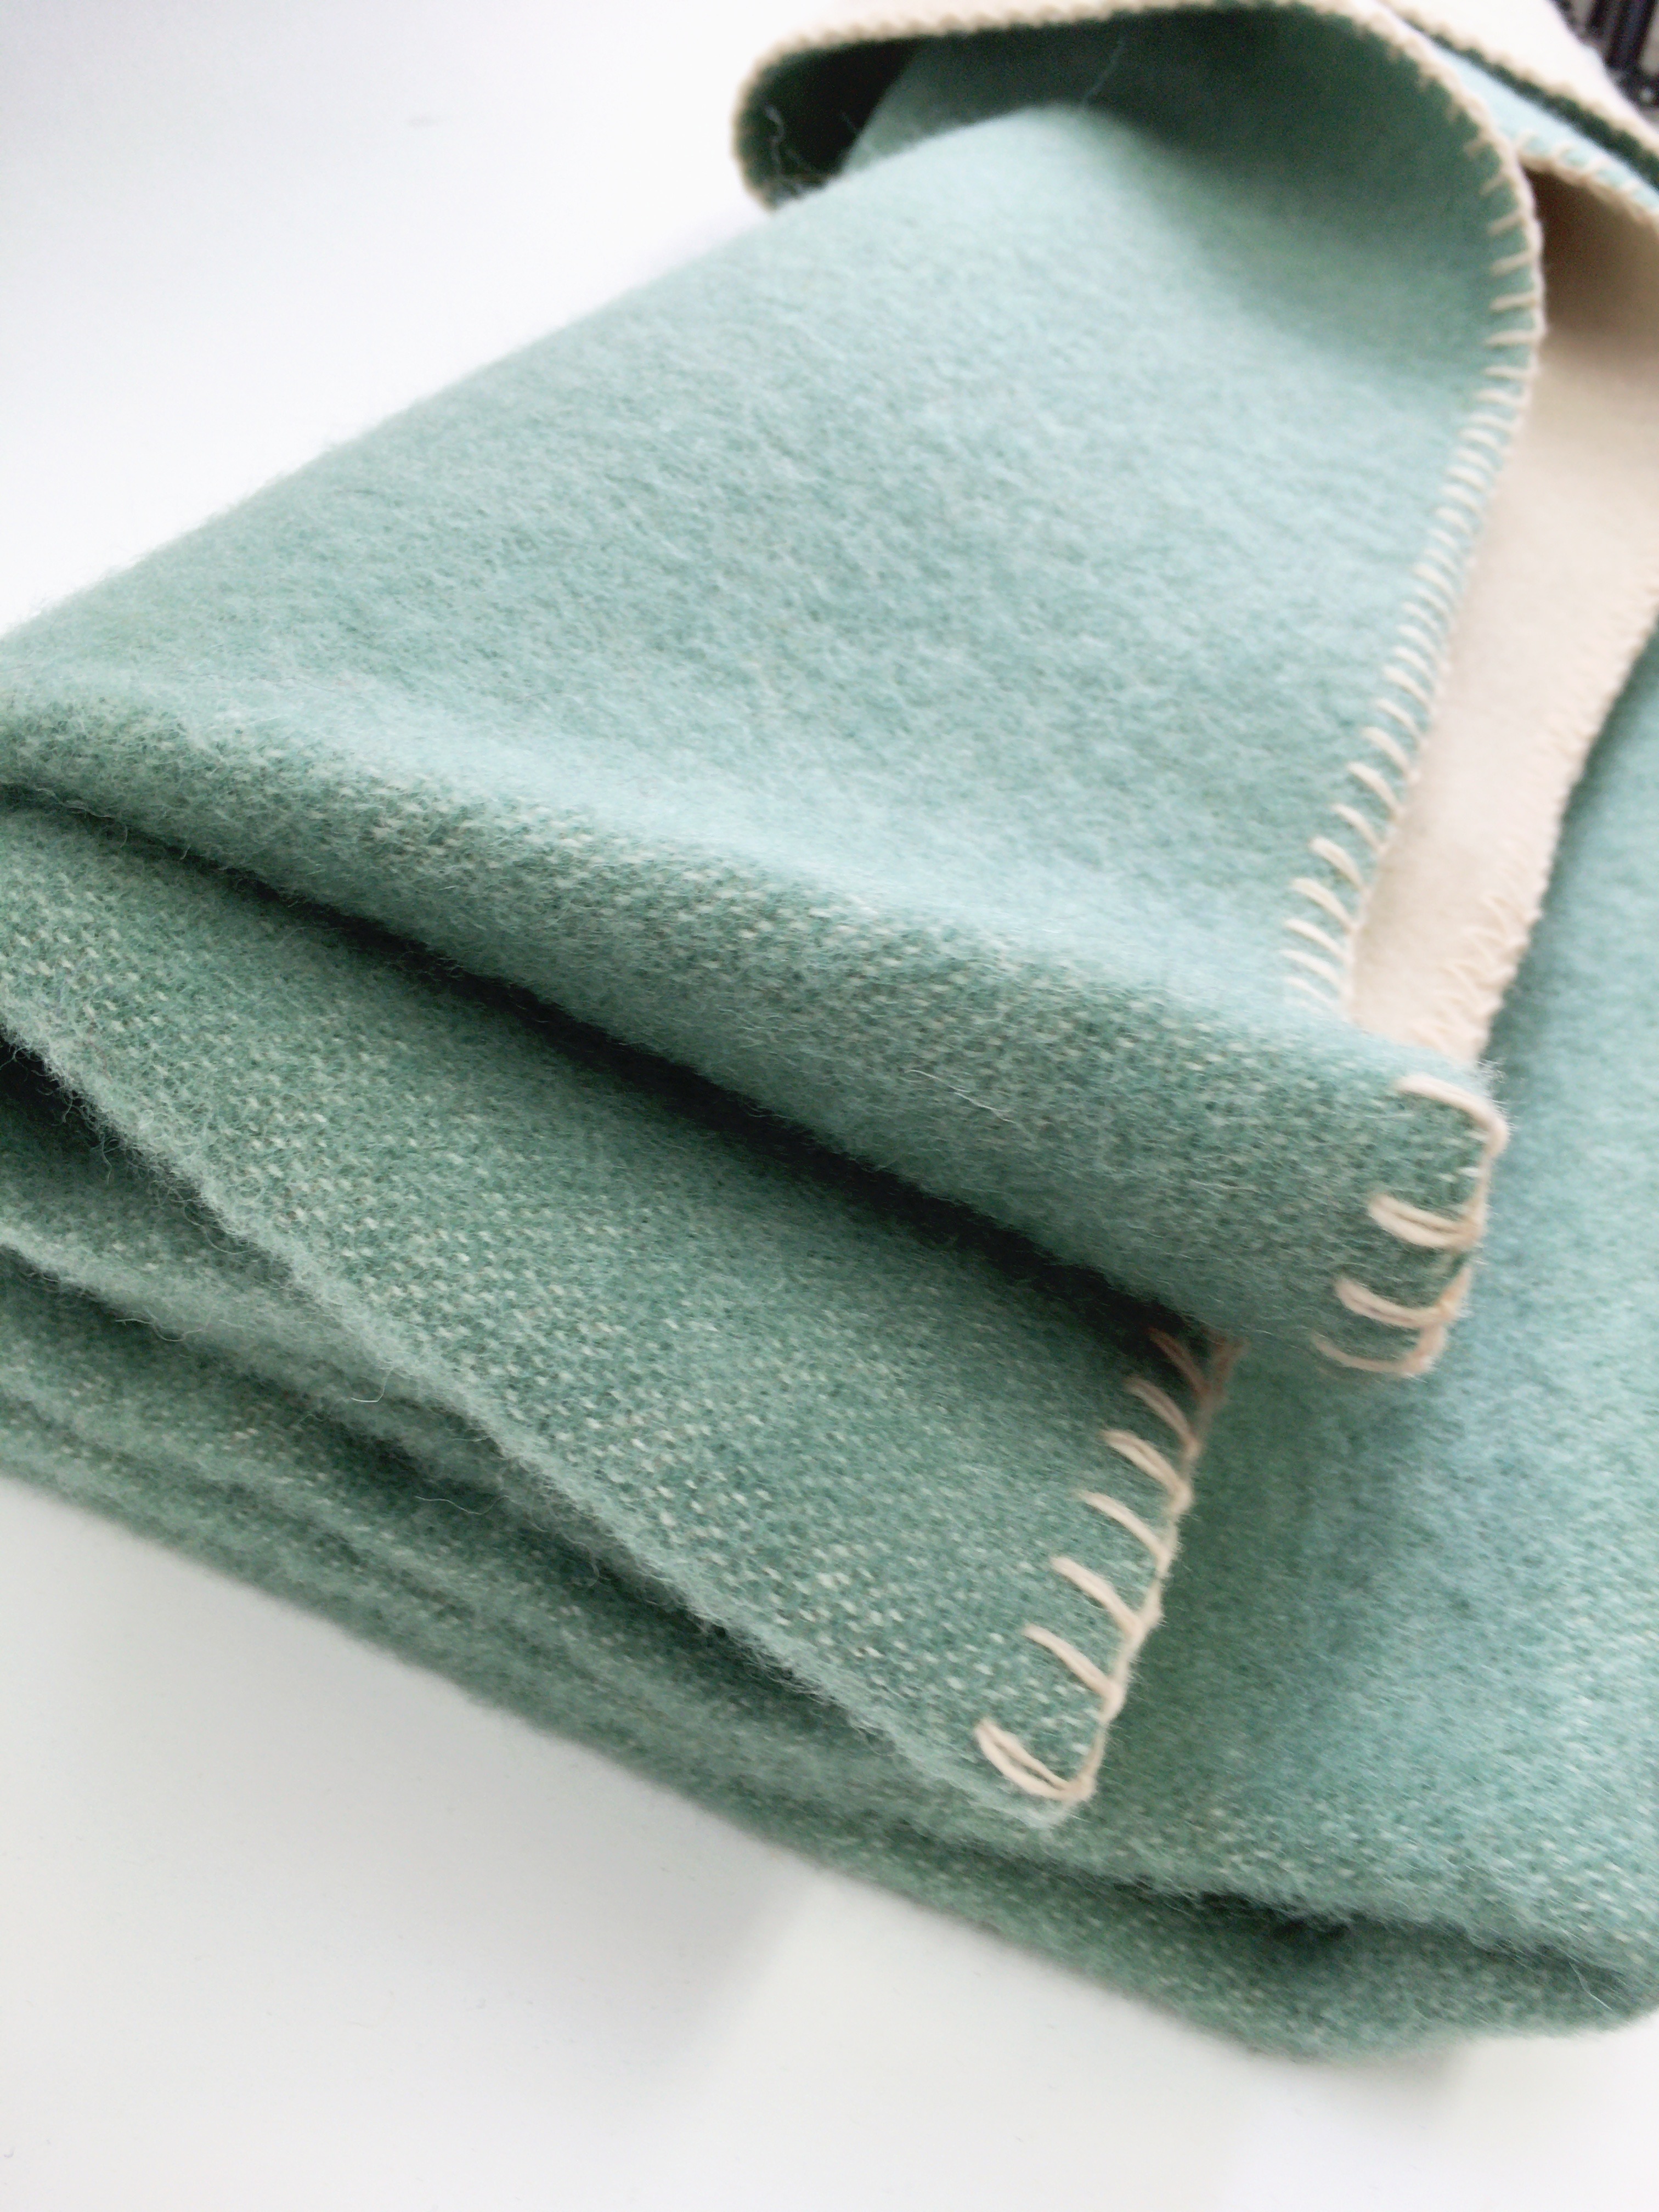 D&T Design Blanket Wool Double Face Beige / Ocean Blue FB65